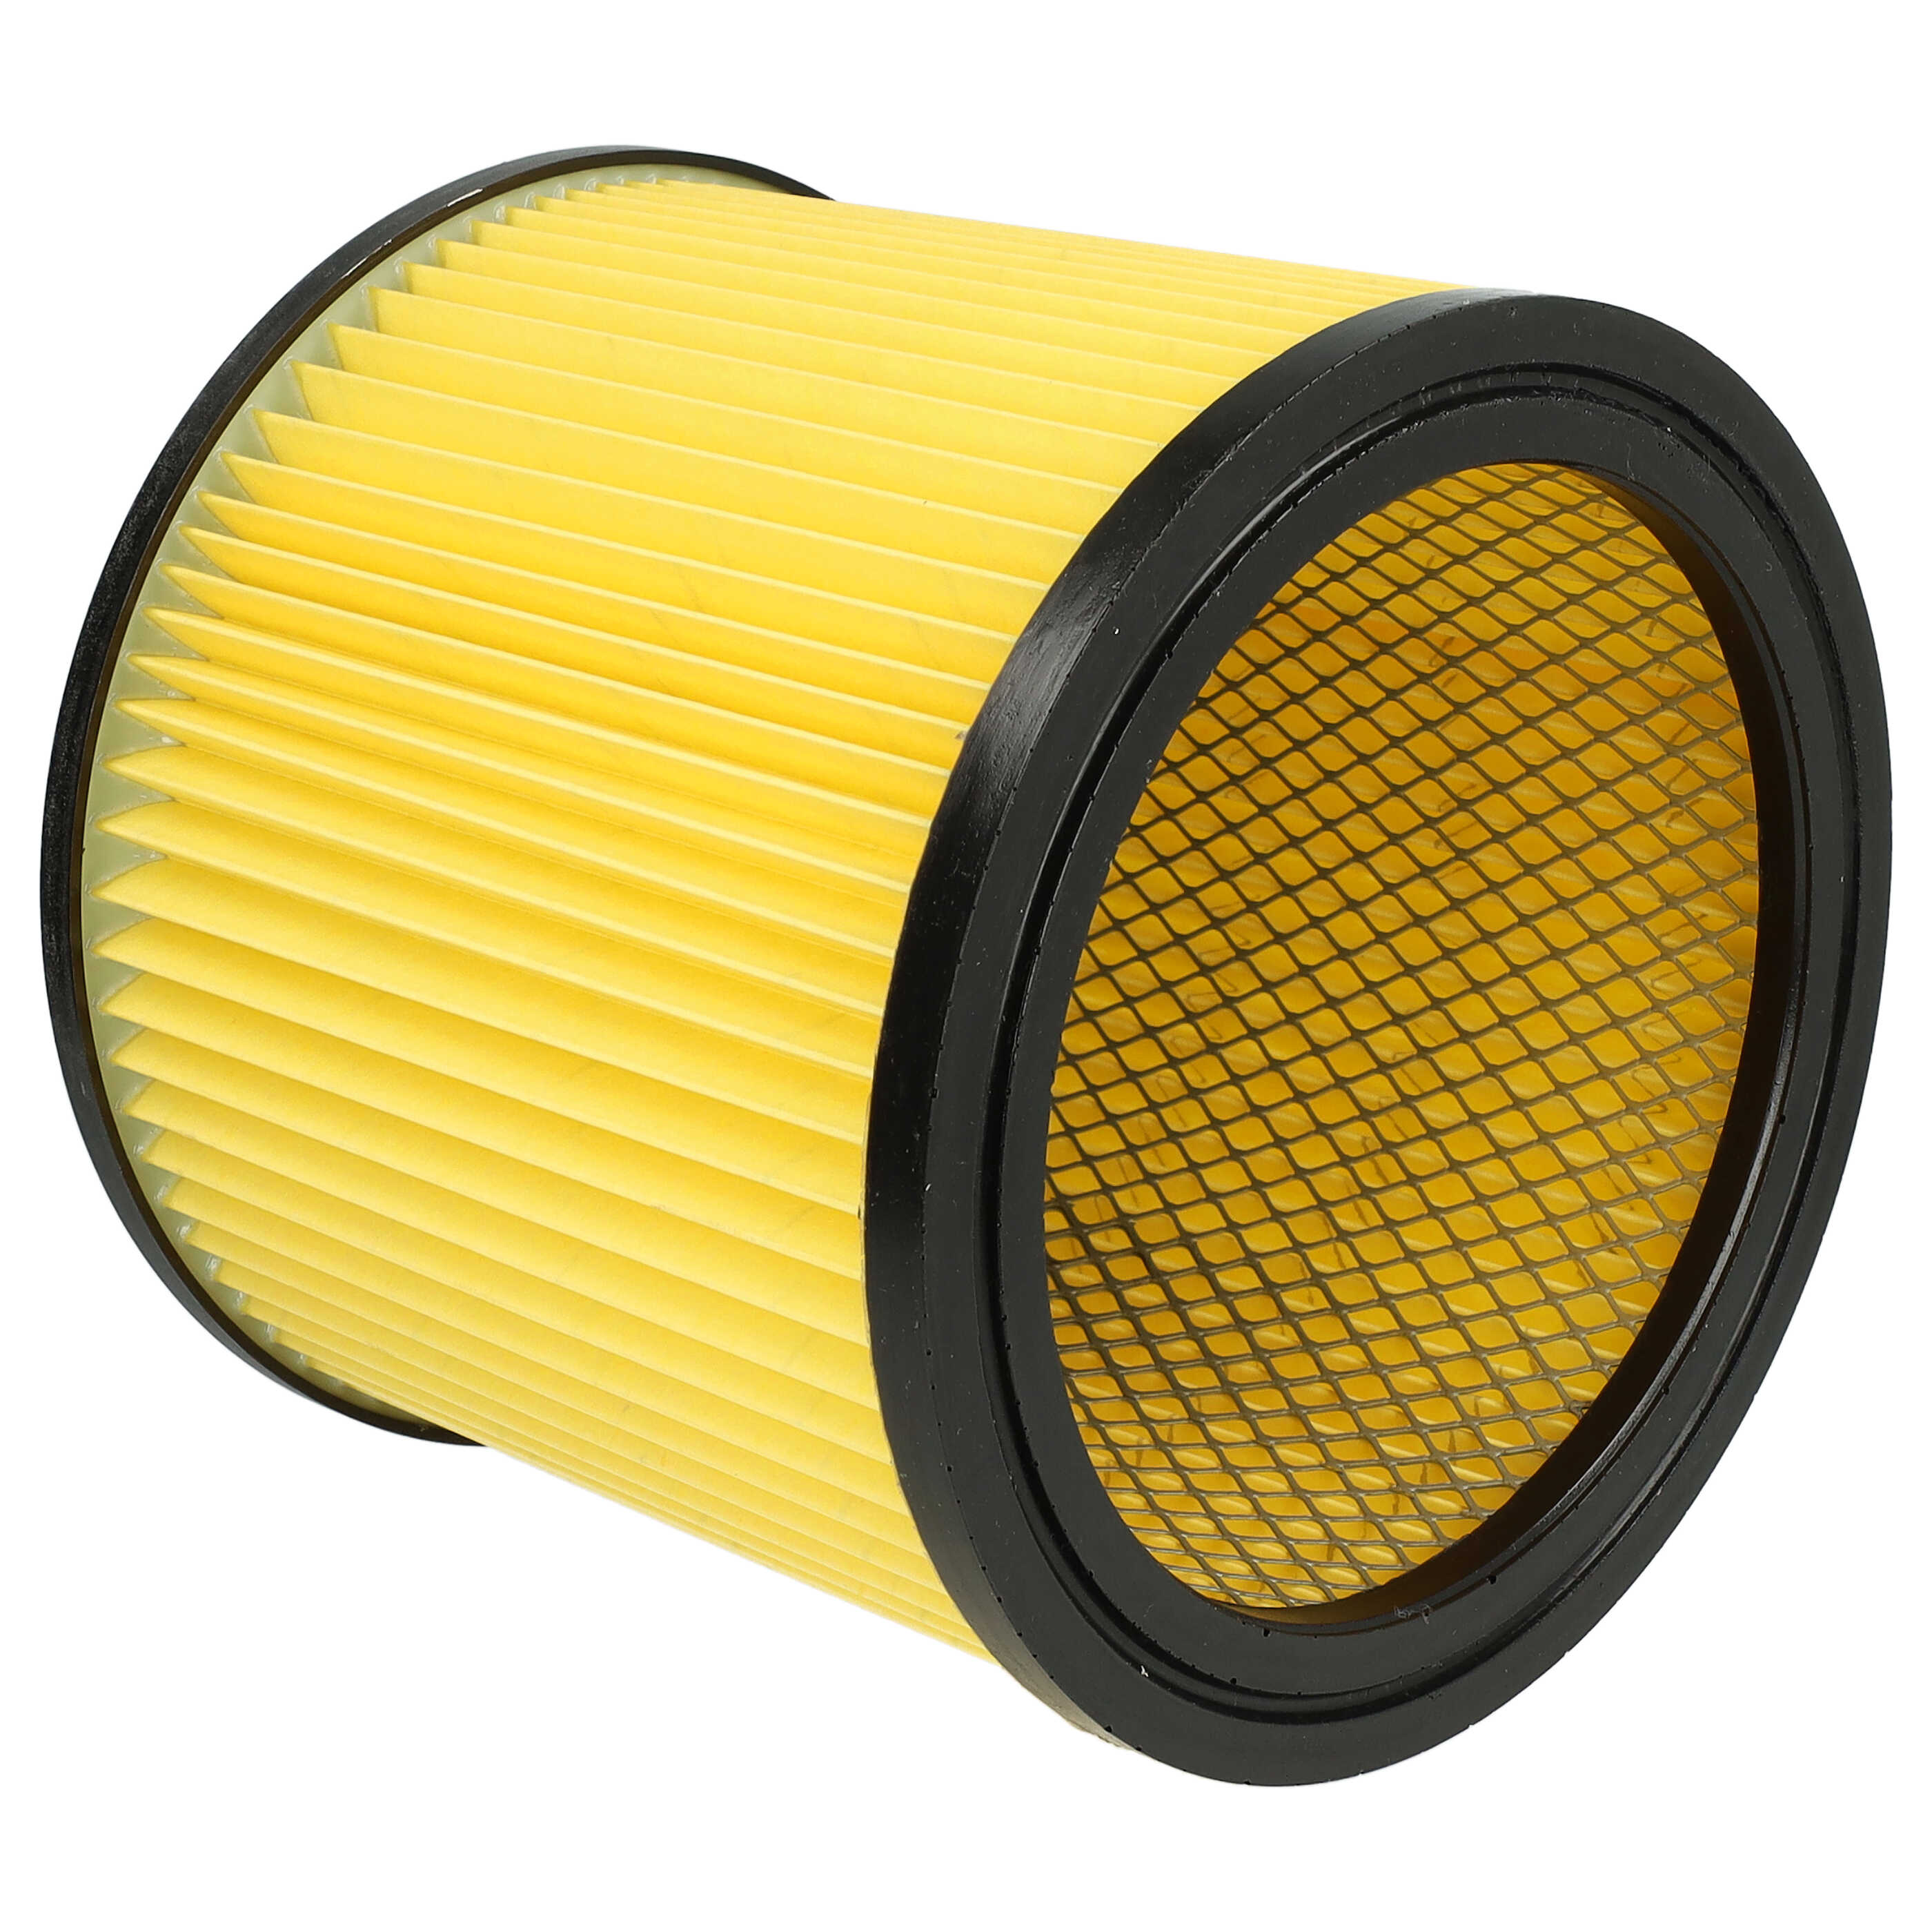 Filtr do odkurzacza Thomas zamiennik Einhell 2351113 - wkład filtracyjny, czarny / żółty